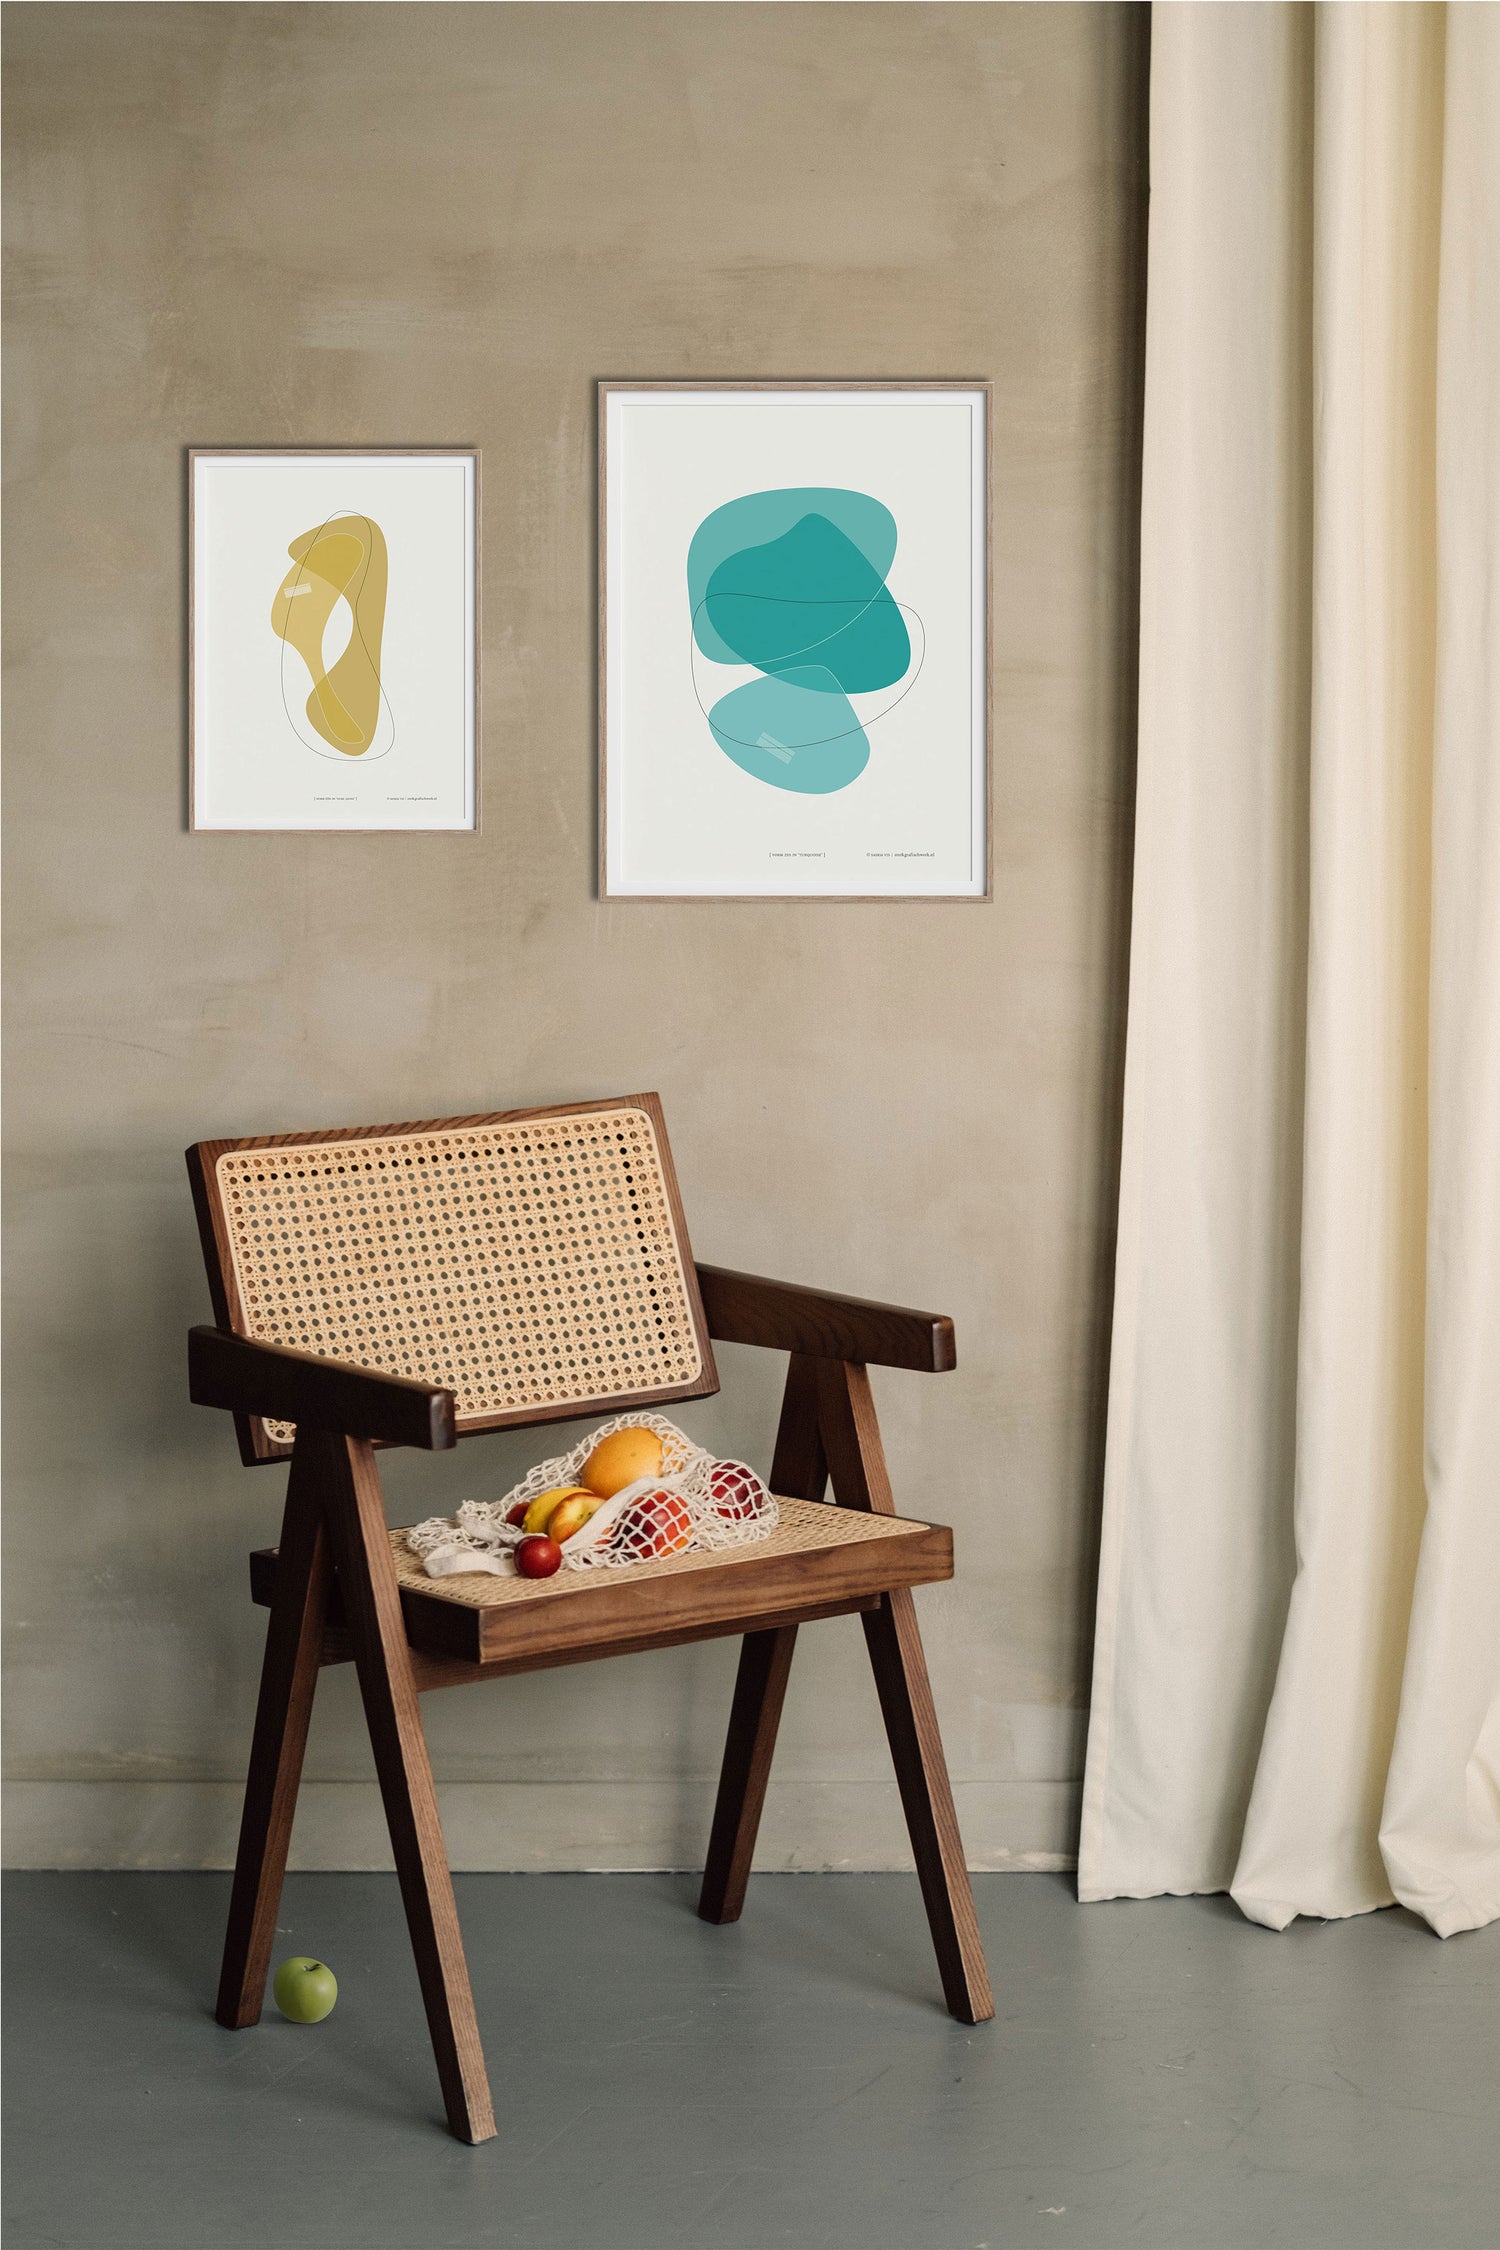 Poster "Vorm één in ocre jaune" en "Vorm zes in turquoise" hangend aan een wand met daaronder een mooie houten stoel